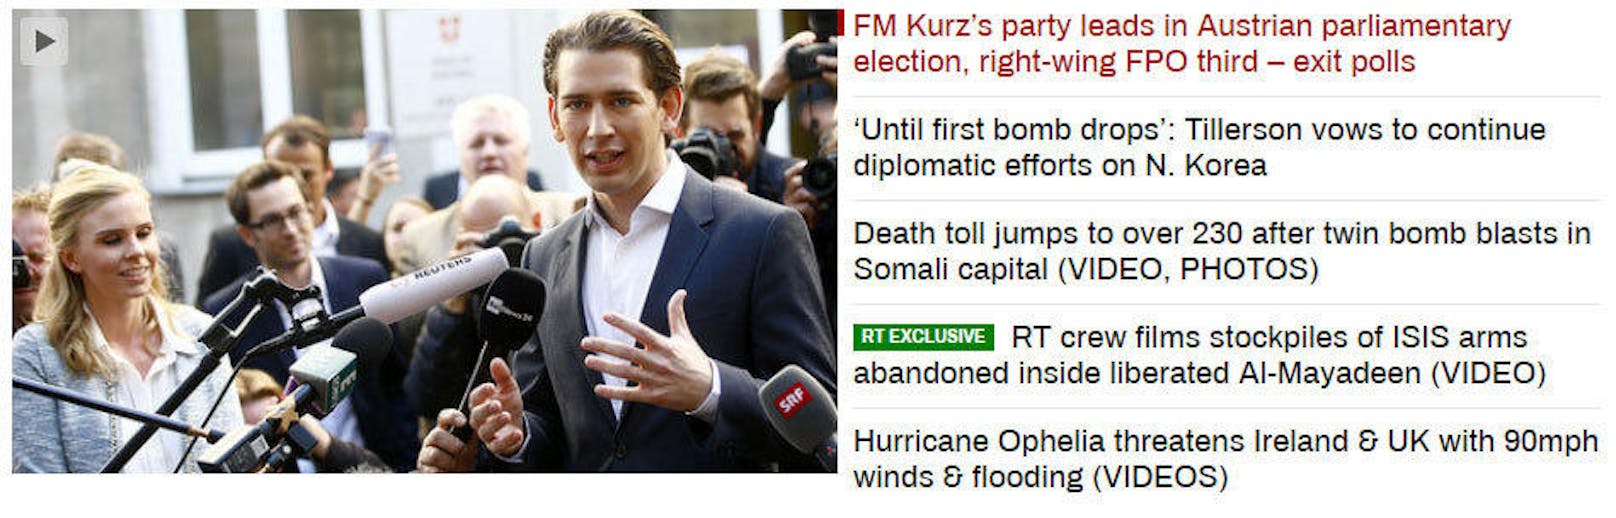 <b>Russia Today:</b> "Partei von Außenminister Kurz führt bei Österreichs Parlamentswahlen, rechtsaußen FPÖ Dritte - Hochrechnung"